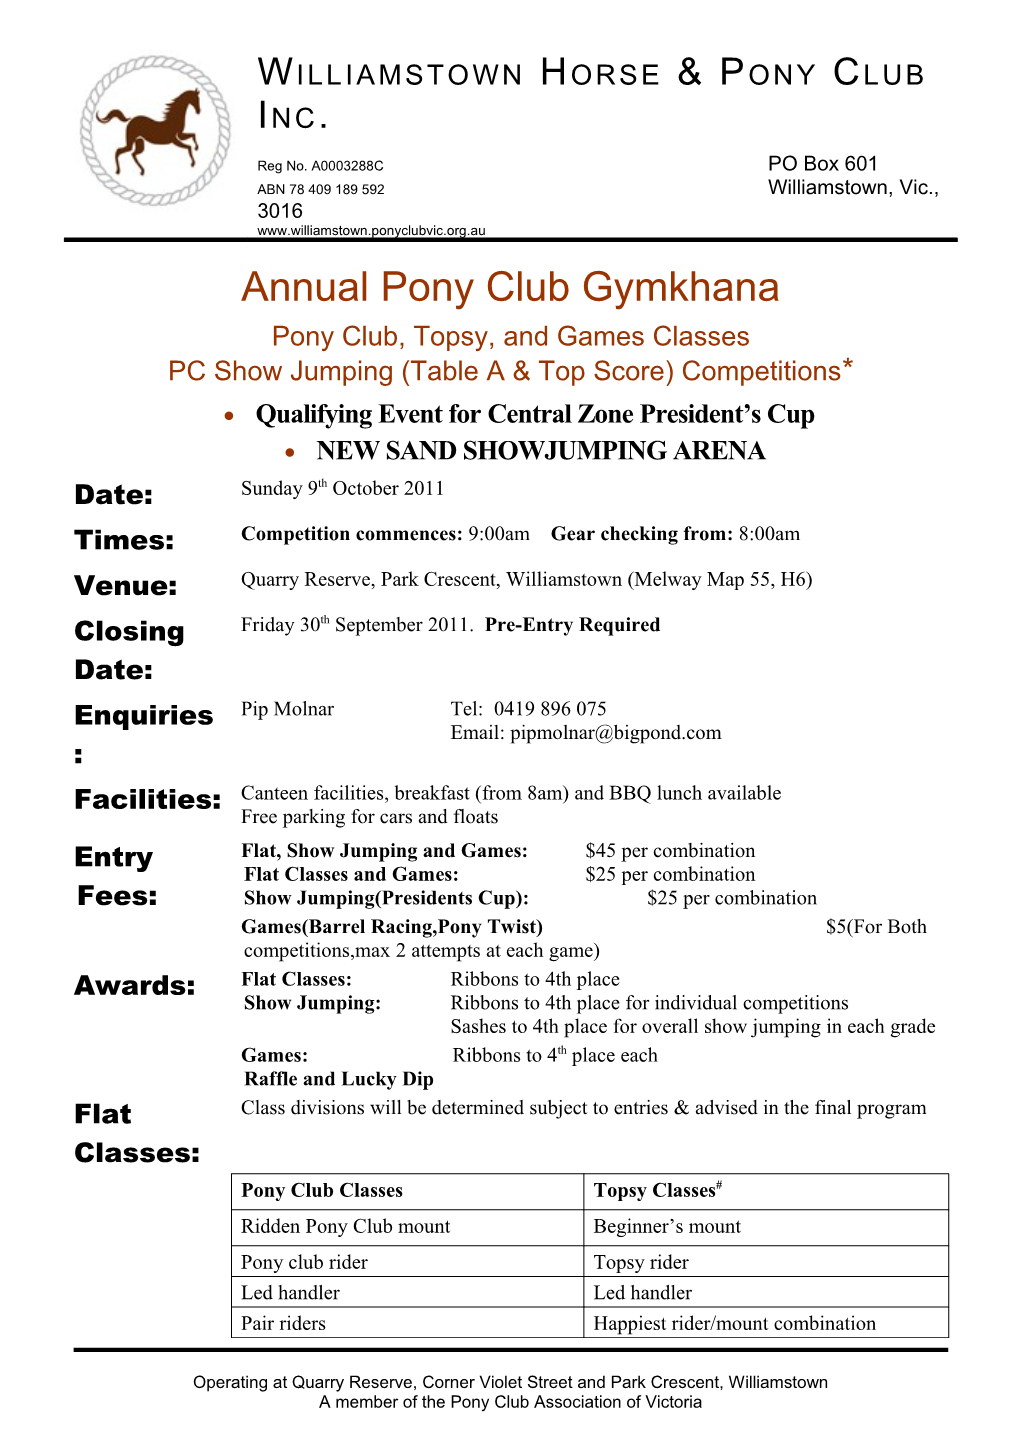 Annual Pony Club Gymkhana